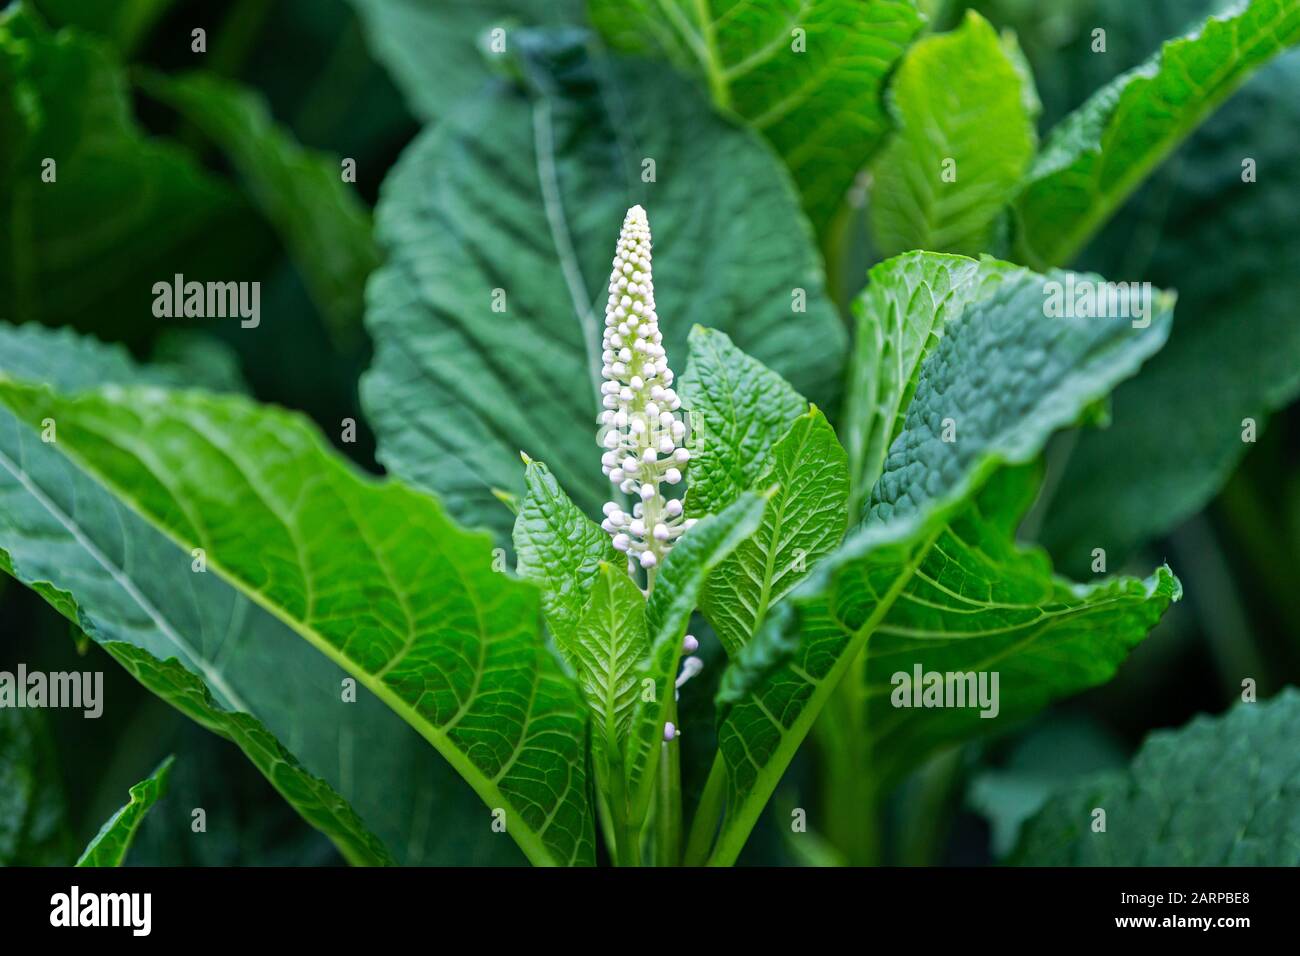 white flower among green leaves Stock Photo